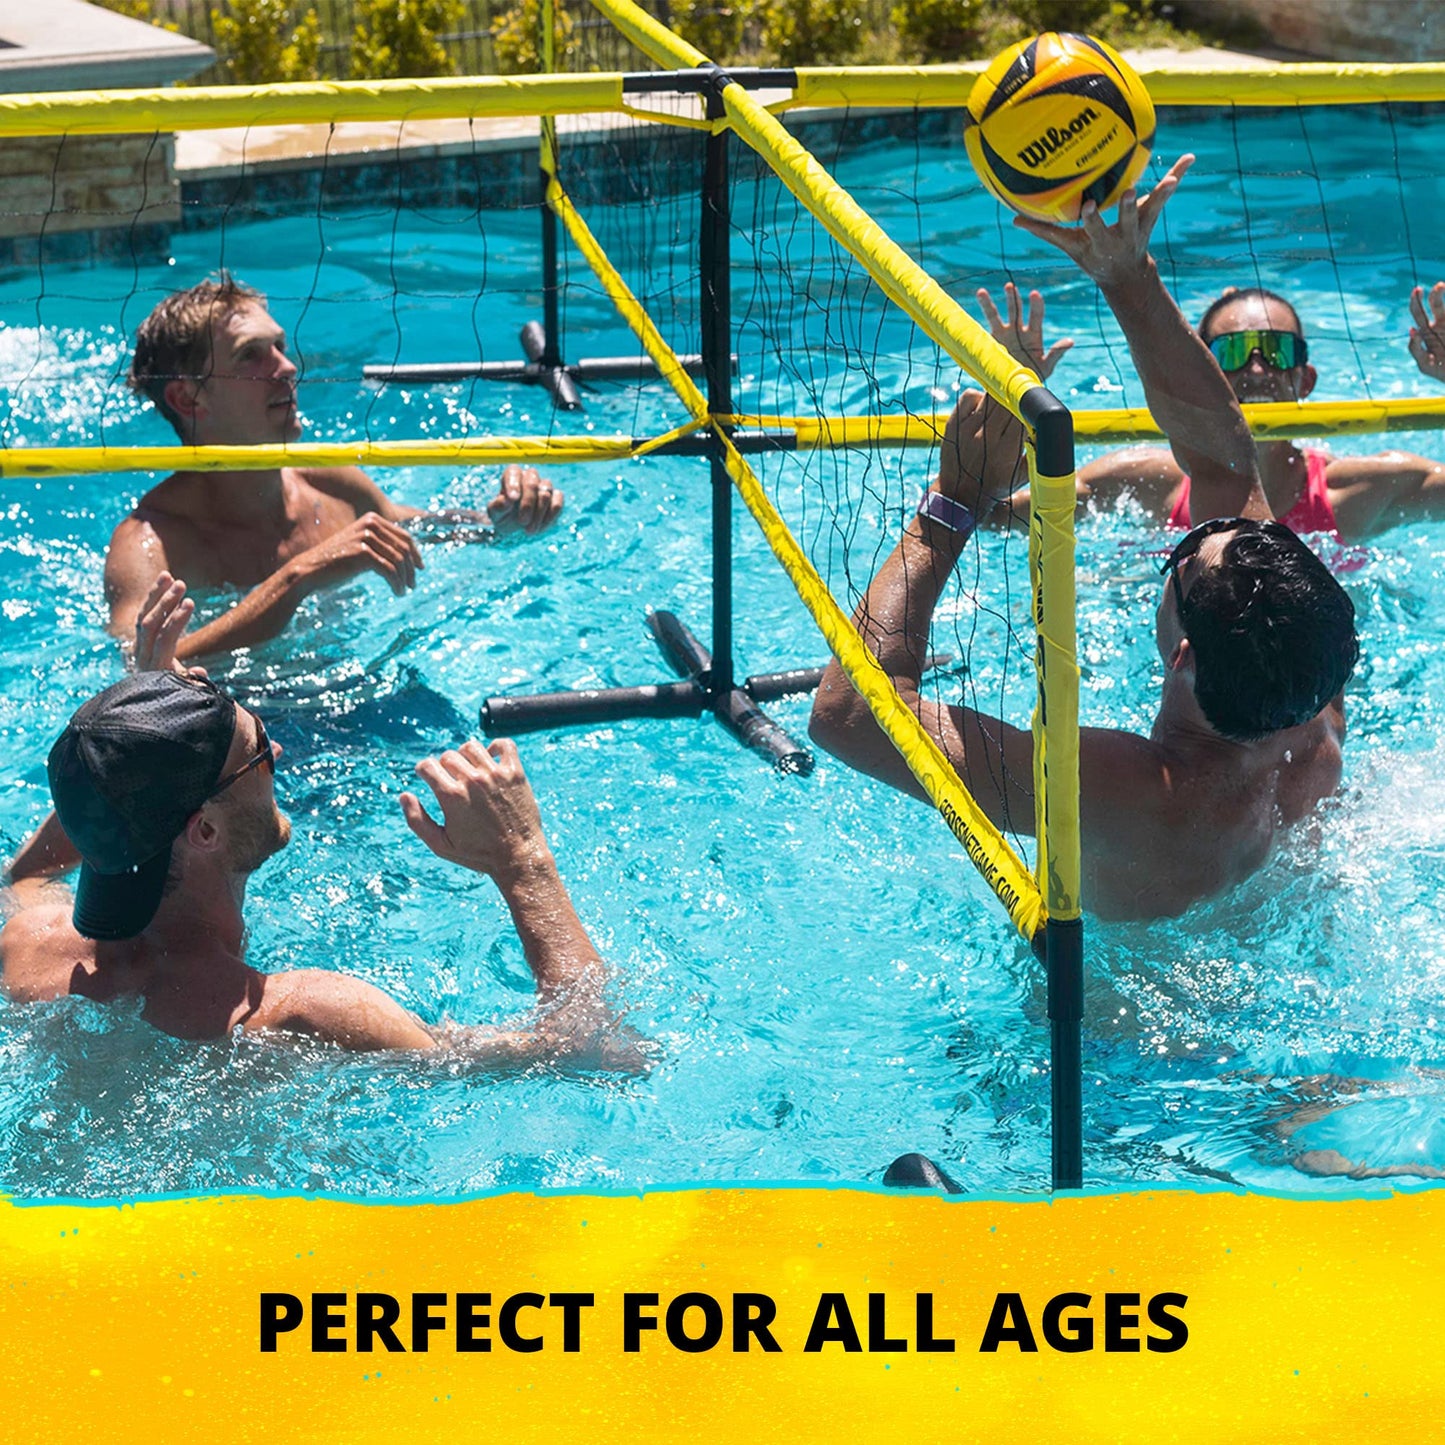 CROSSNET H2O Jeu de volley-ball pour adultes et famille – Jeu de piscine à quatre filets carrés – Assemblage rapide et portable – Ensemble de volley-ball pour piscines creusées – Jouets de piscine parfaits pour tous les âges avec accessoires